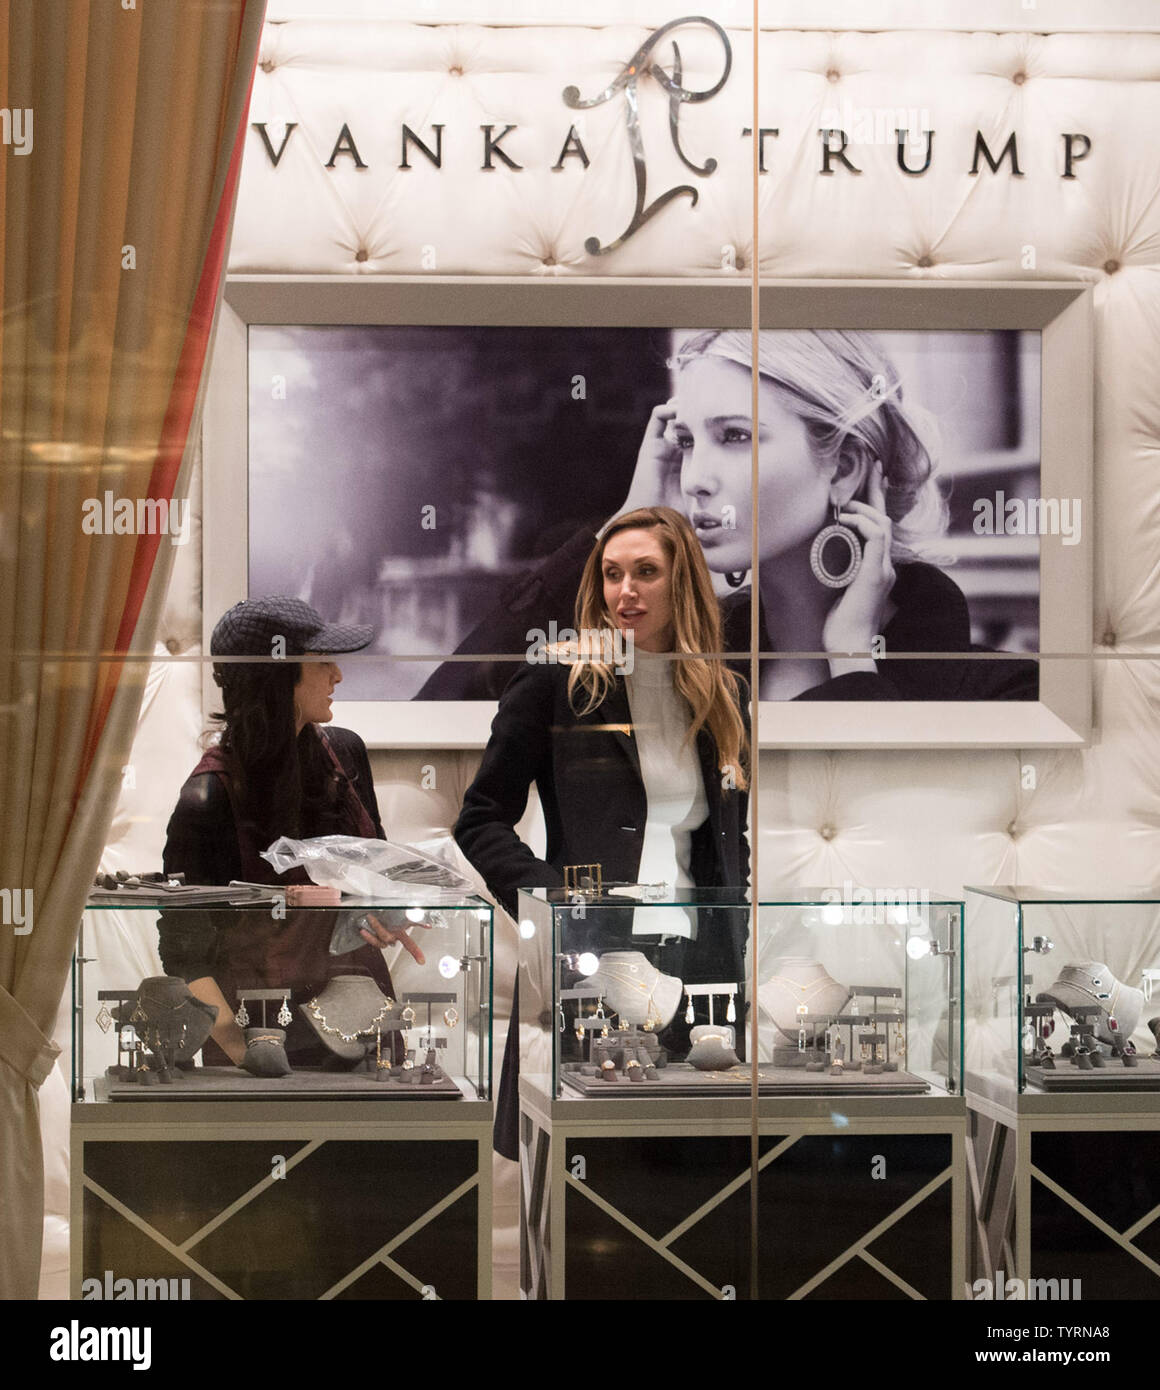 Lara Yunaska (C), Eric Trump la moglie, si erge nel Ivanka Trump boutique al Trump Tower on gennaio 17, 2017 a New York City. Stati Uniti Presidente Eletto Donald Trump è ancora tenere riunioni al piano di sopra al Trump Tower, solo 3 giorni prima dell'inaugurazione. Foto di Bryan R. Smith/UPI Foto Stock